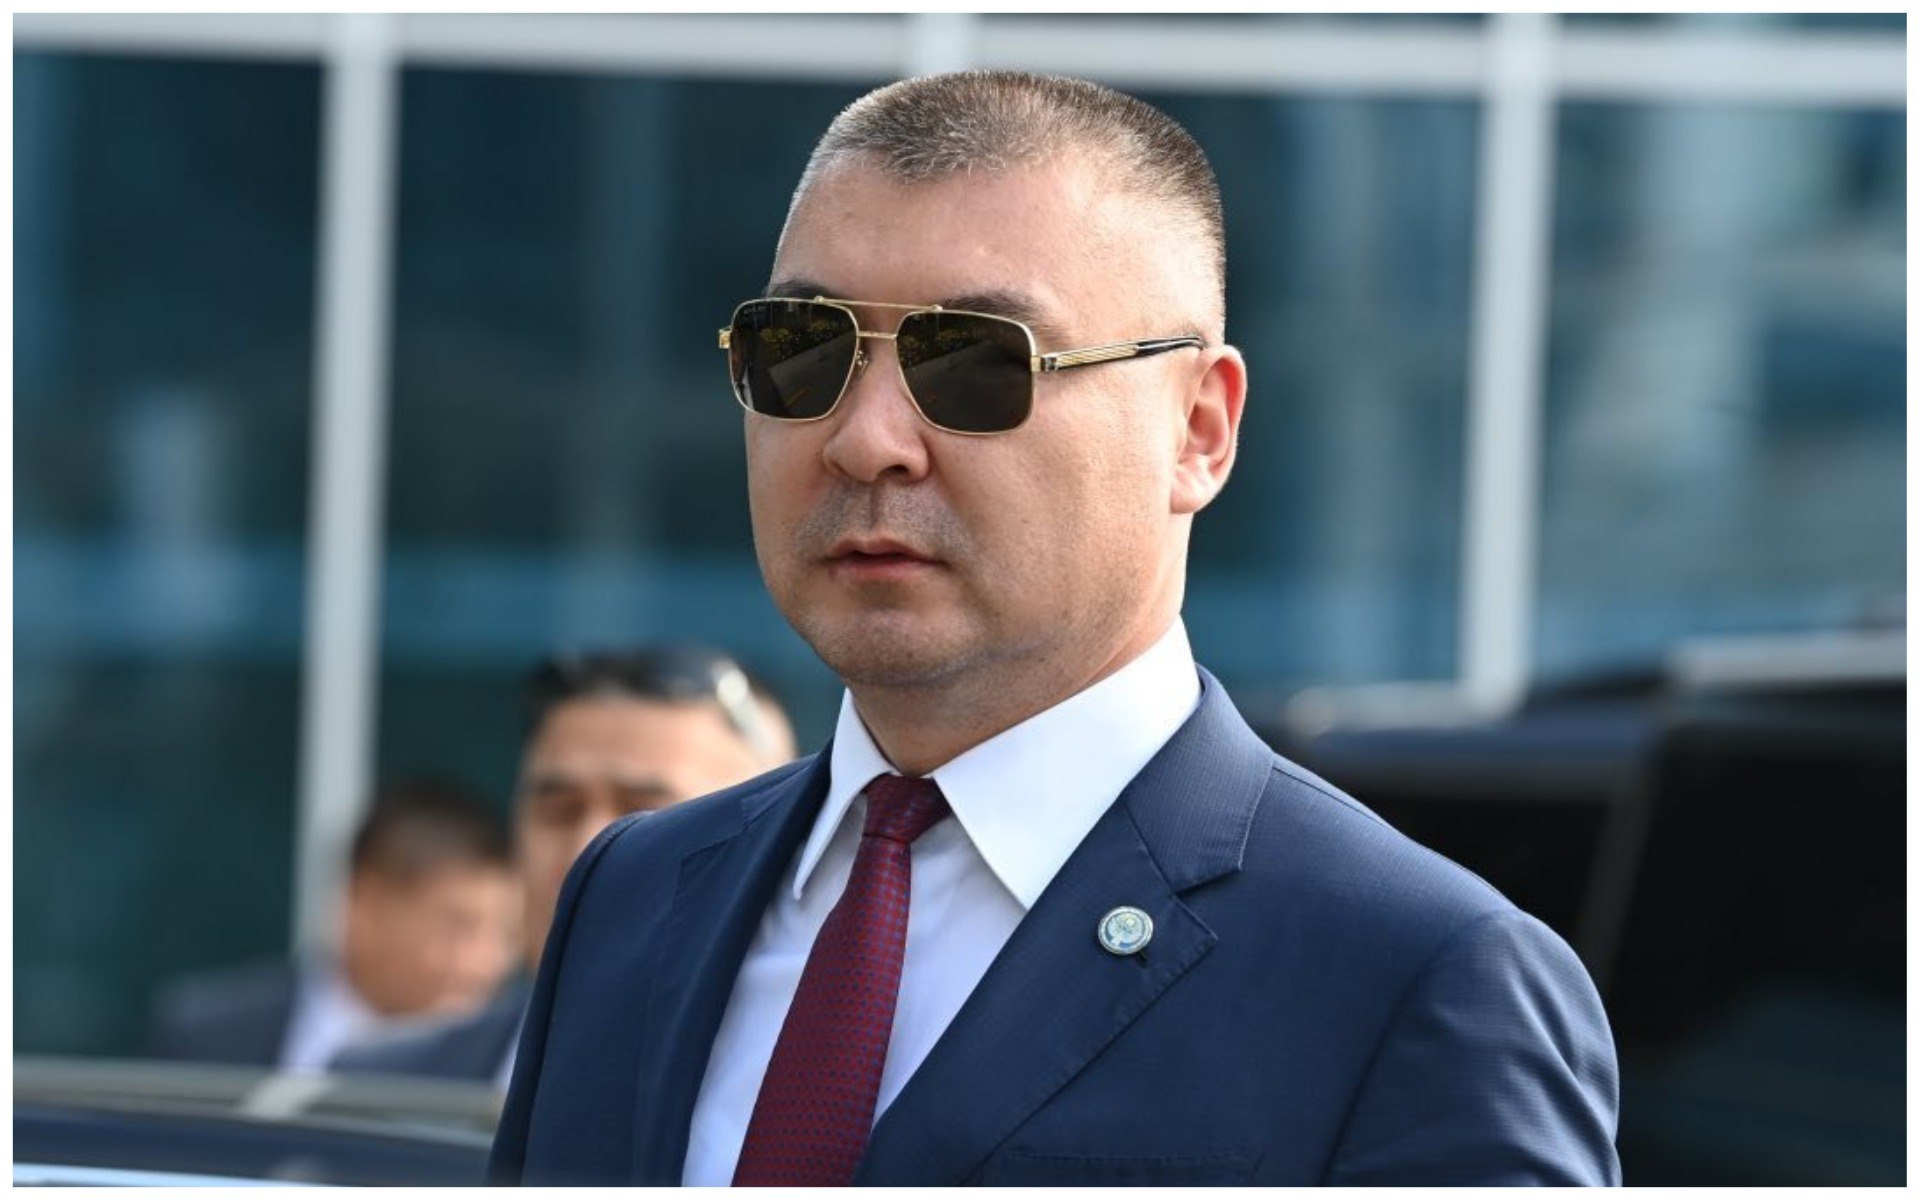 Скандал с флагом: Туманбаев предложил привлечь к ответственности тех, кто «стремится ухудшить репутацию государства»